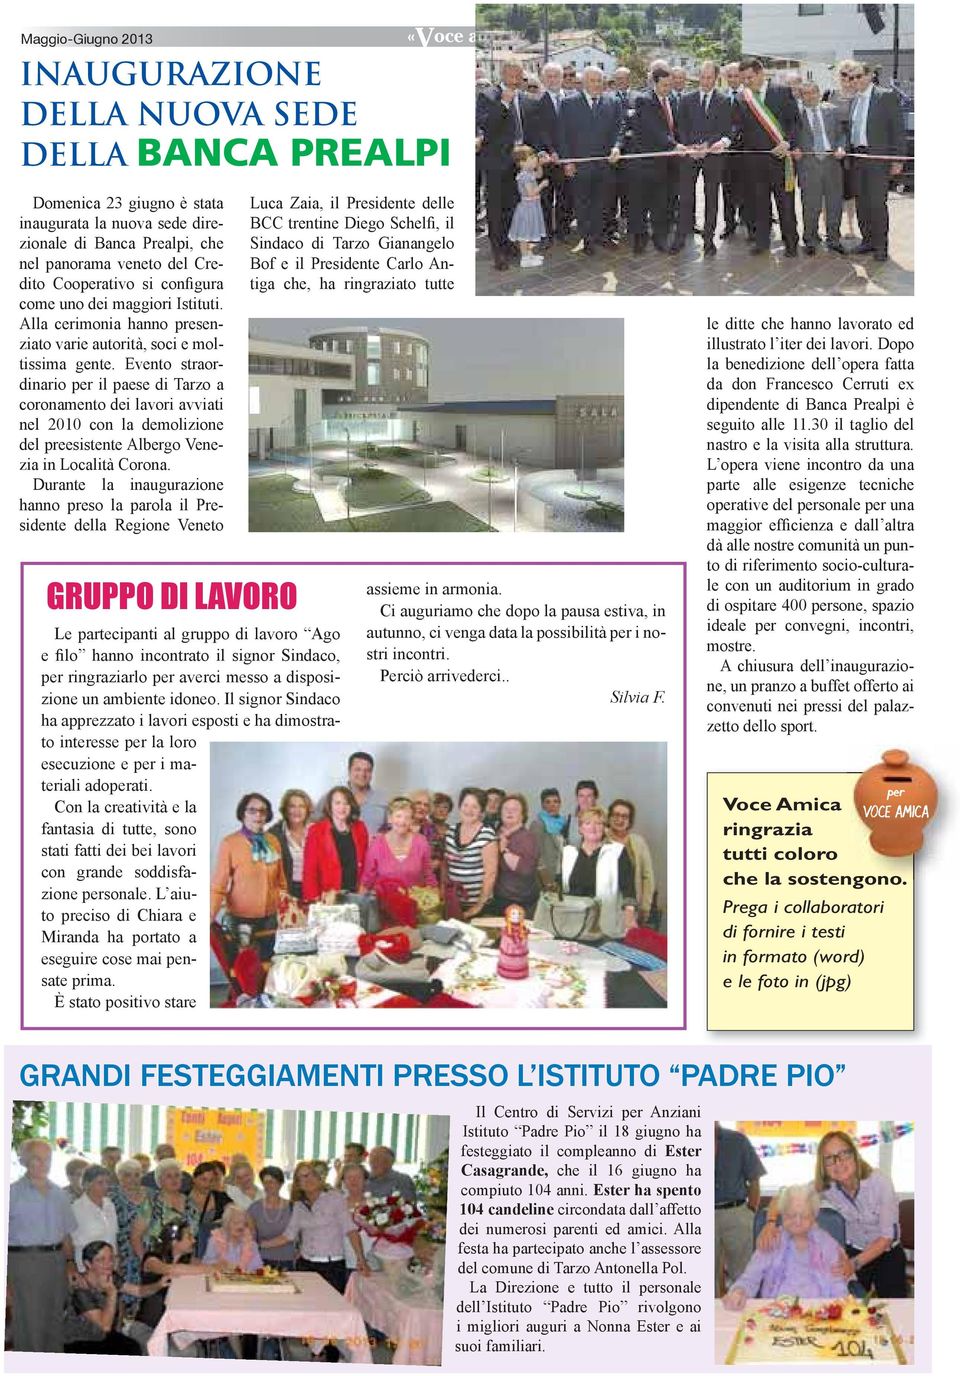 Evento straordinario per il paese di Tarzo a coronamento dei lavori avviati nel 2010 con la demolizione del preesistente Albergo Venezia in Località Corona.